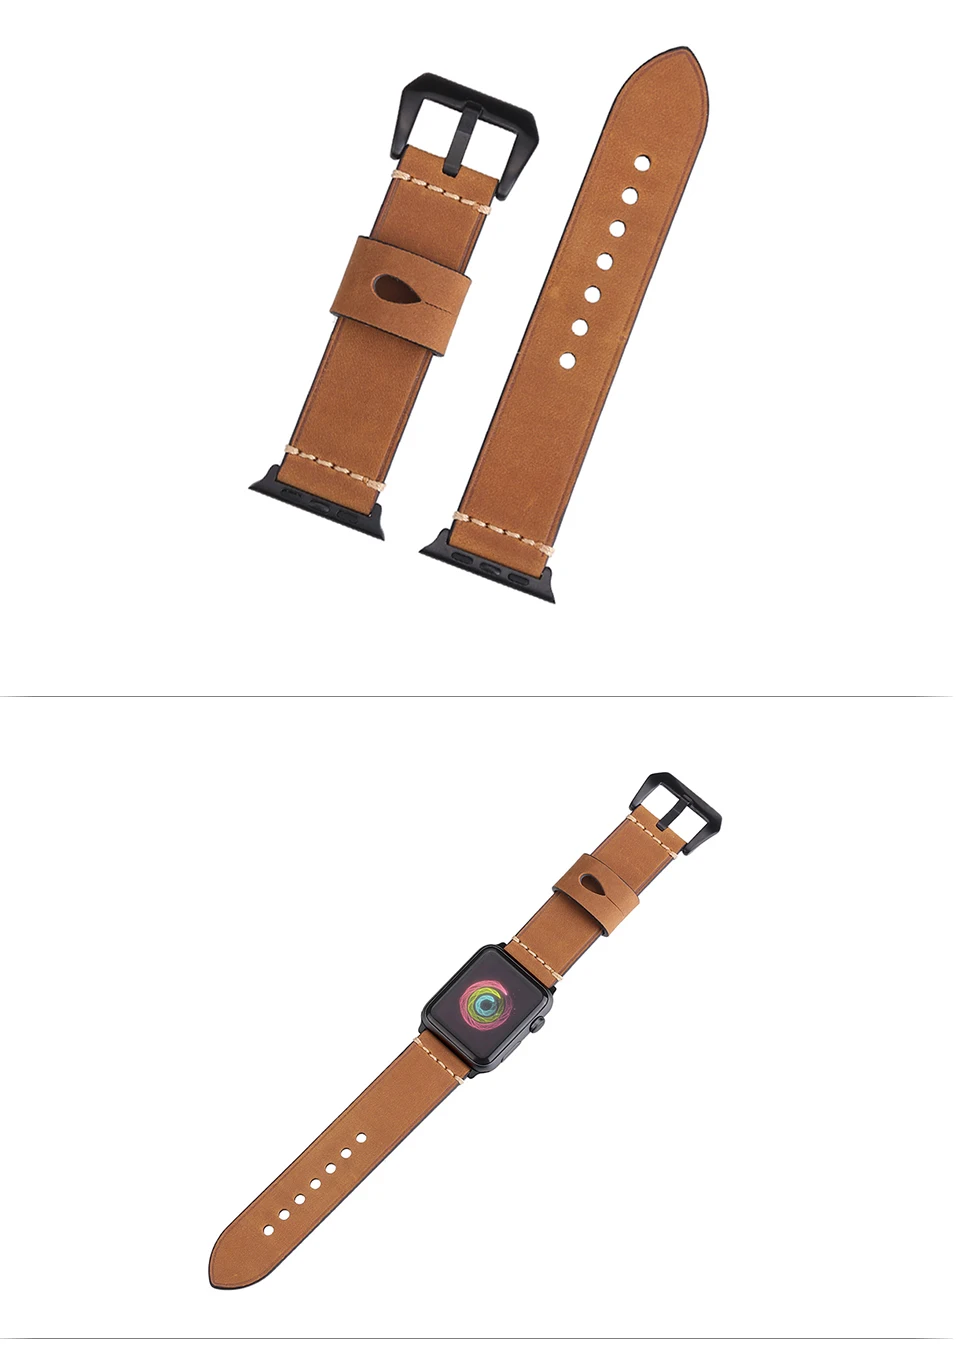 BEAFIRY для Apple watch iwatch для ремешка часов 42 мм Натуральная Crazy Horse телячья кожа темно-коричневый светло-коричневый серый